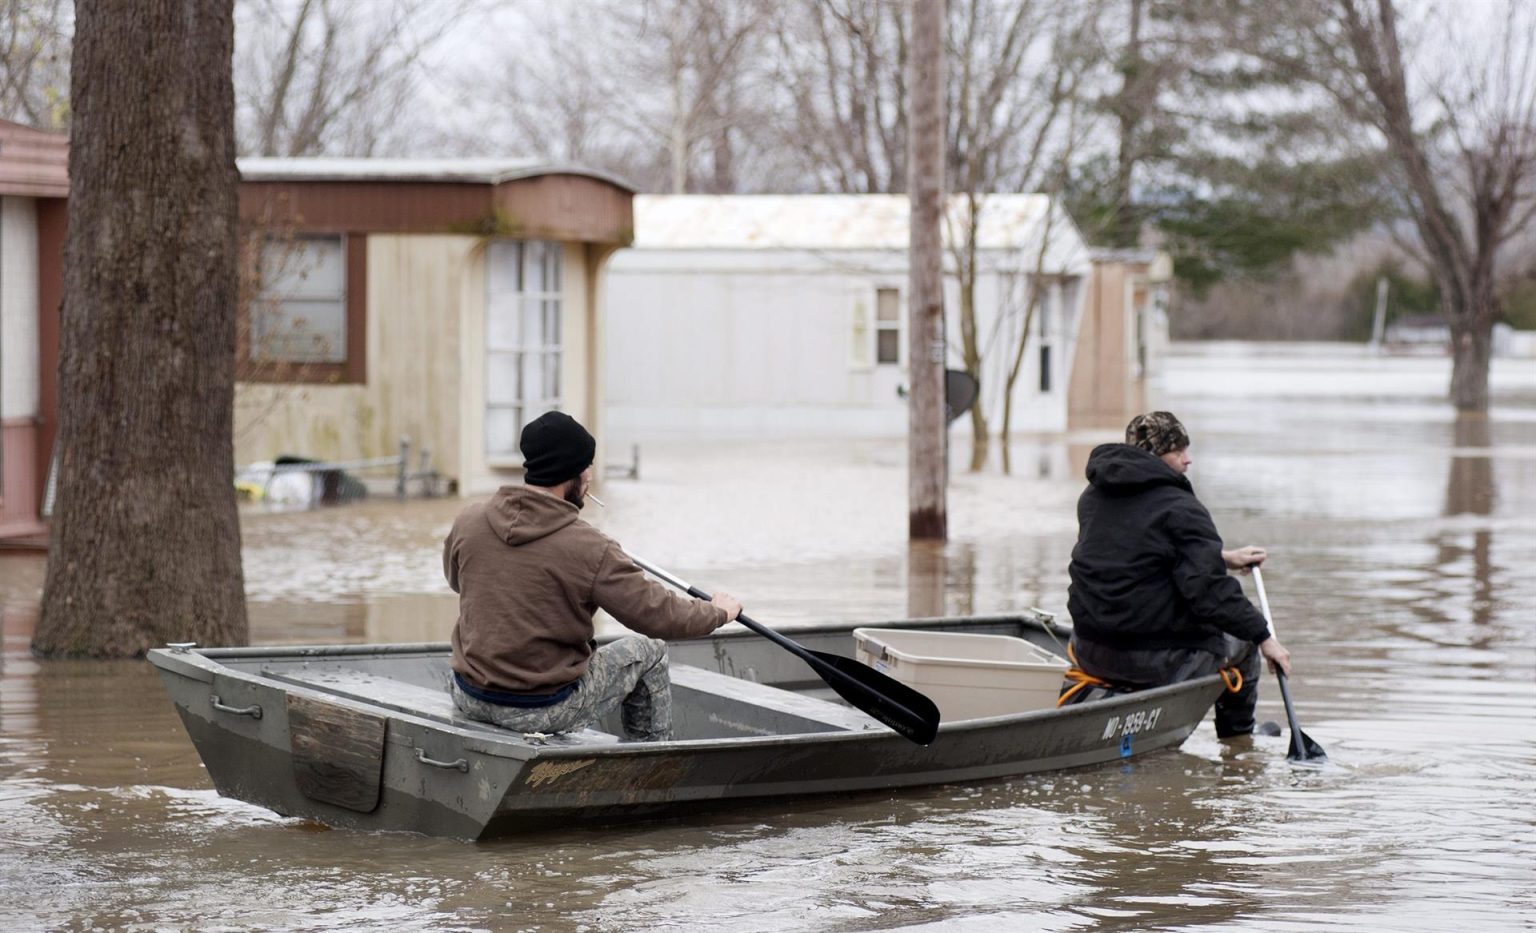 Imagen de archivo que muestra a vecinos utilizando una barca para inspeccionar las zonas inundadas por las aguas en Misuri, Estados Unidos. EFE/Sid Hastings